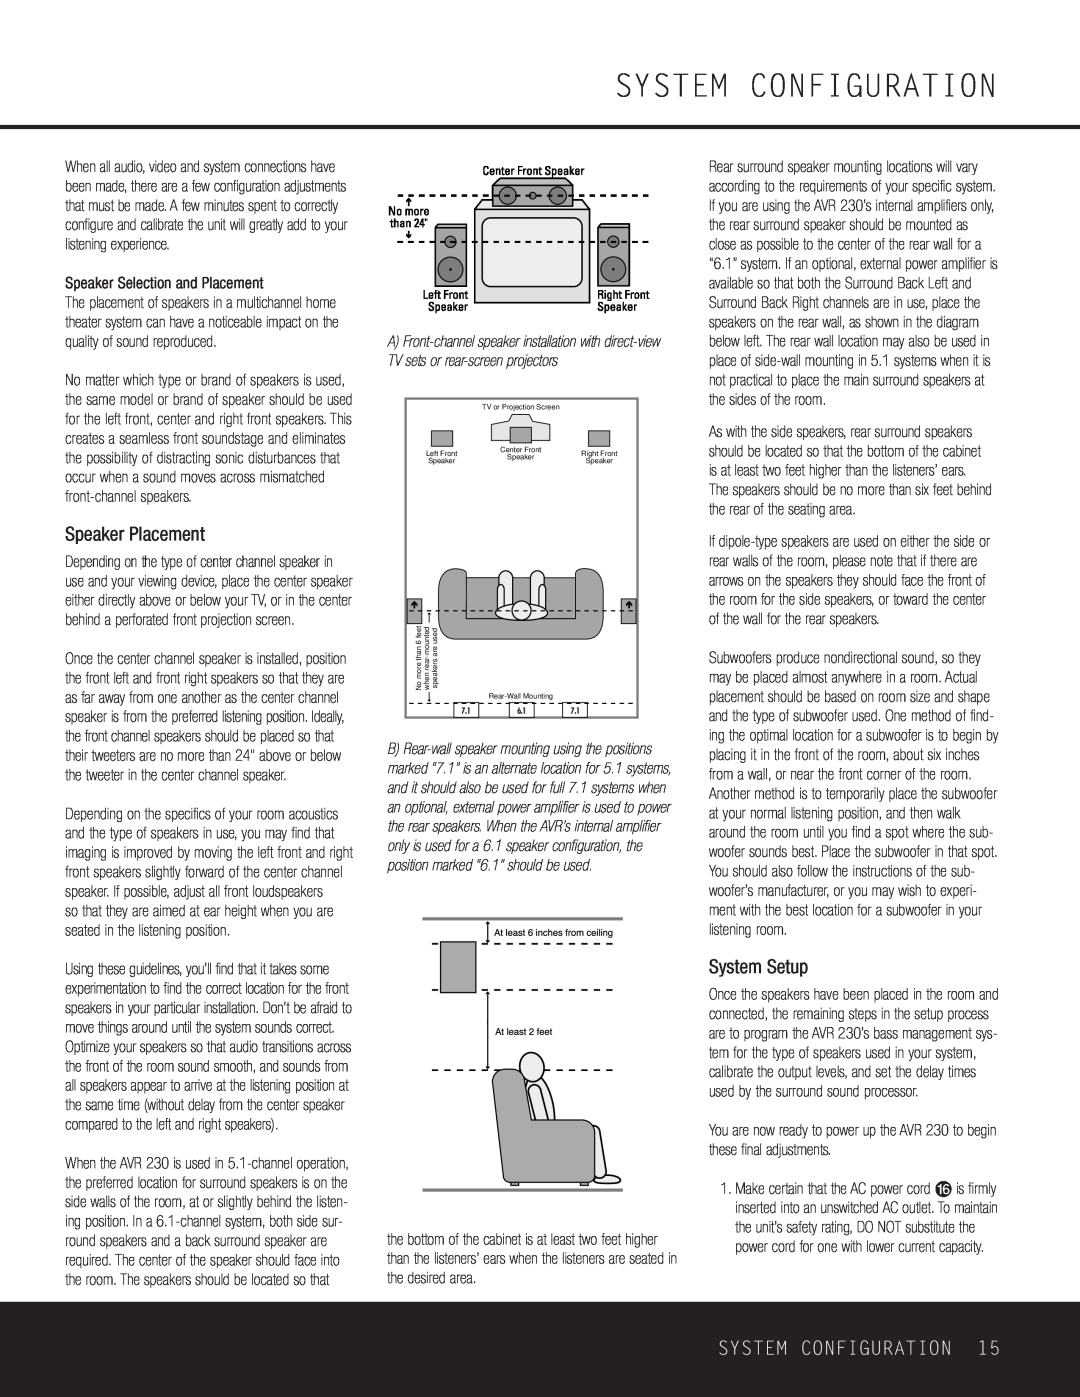 Harman-Kardon AVR 230 owner manual System Configuration, Speaker Placement, System Setup 